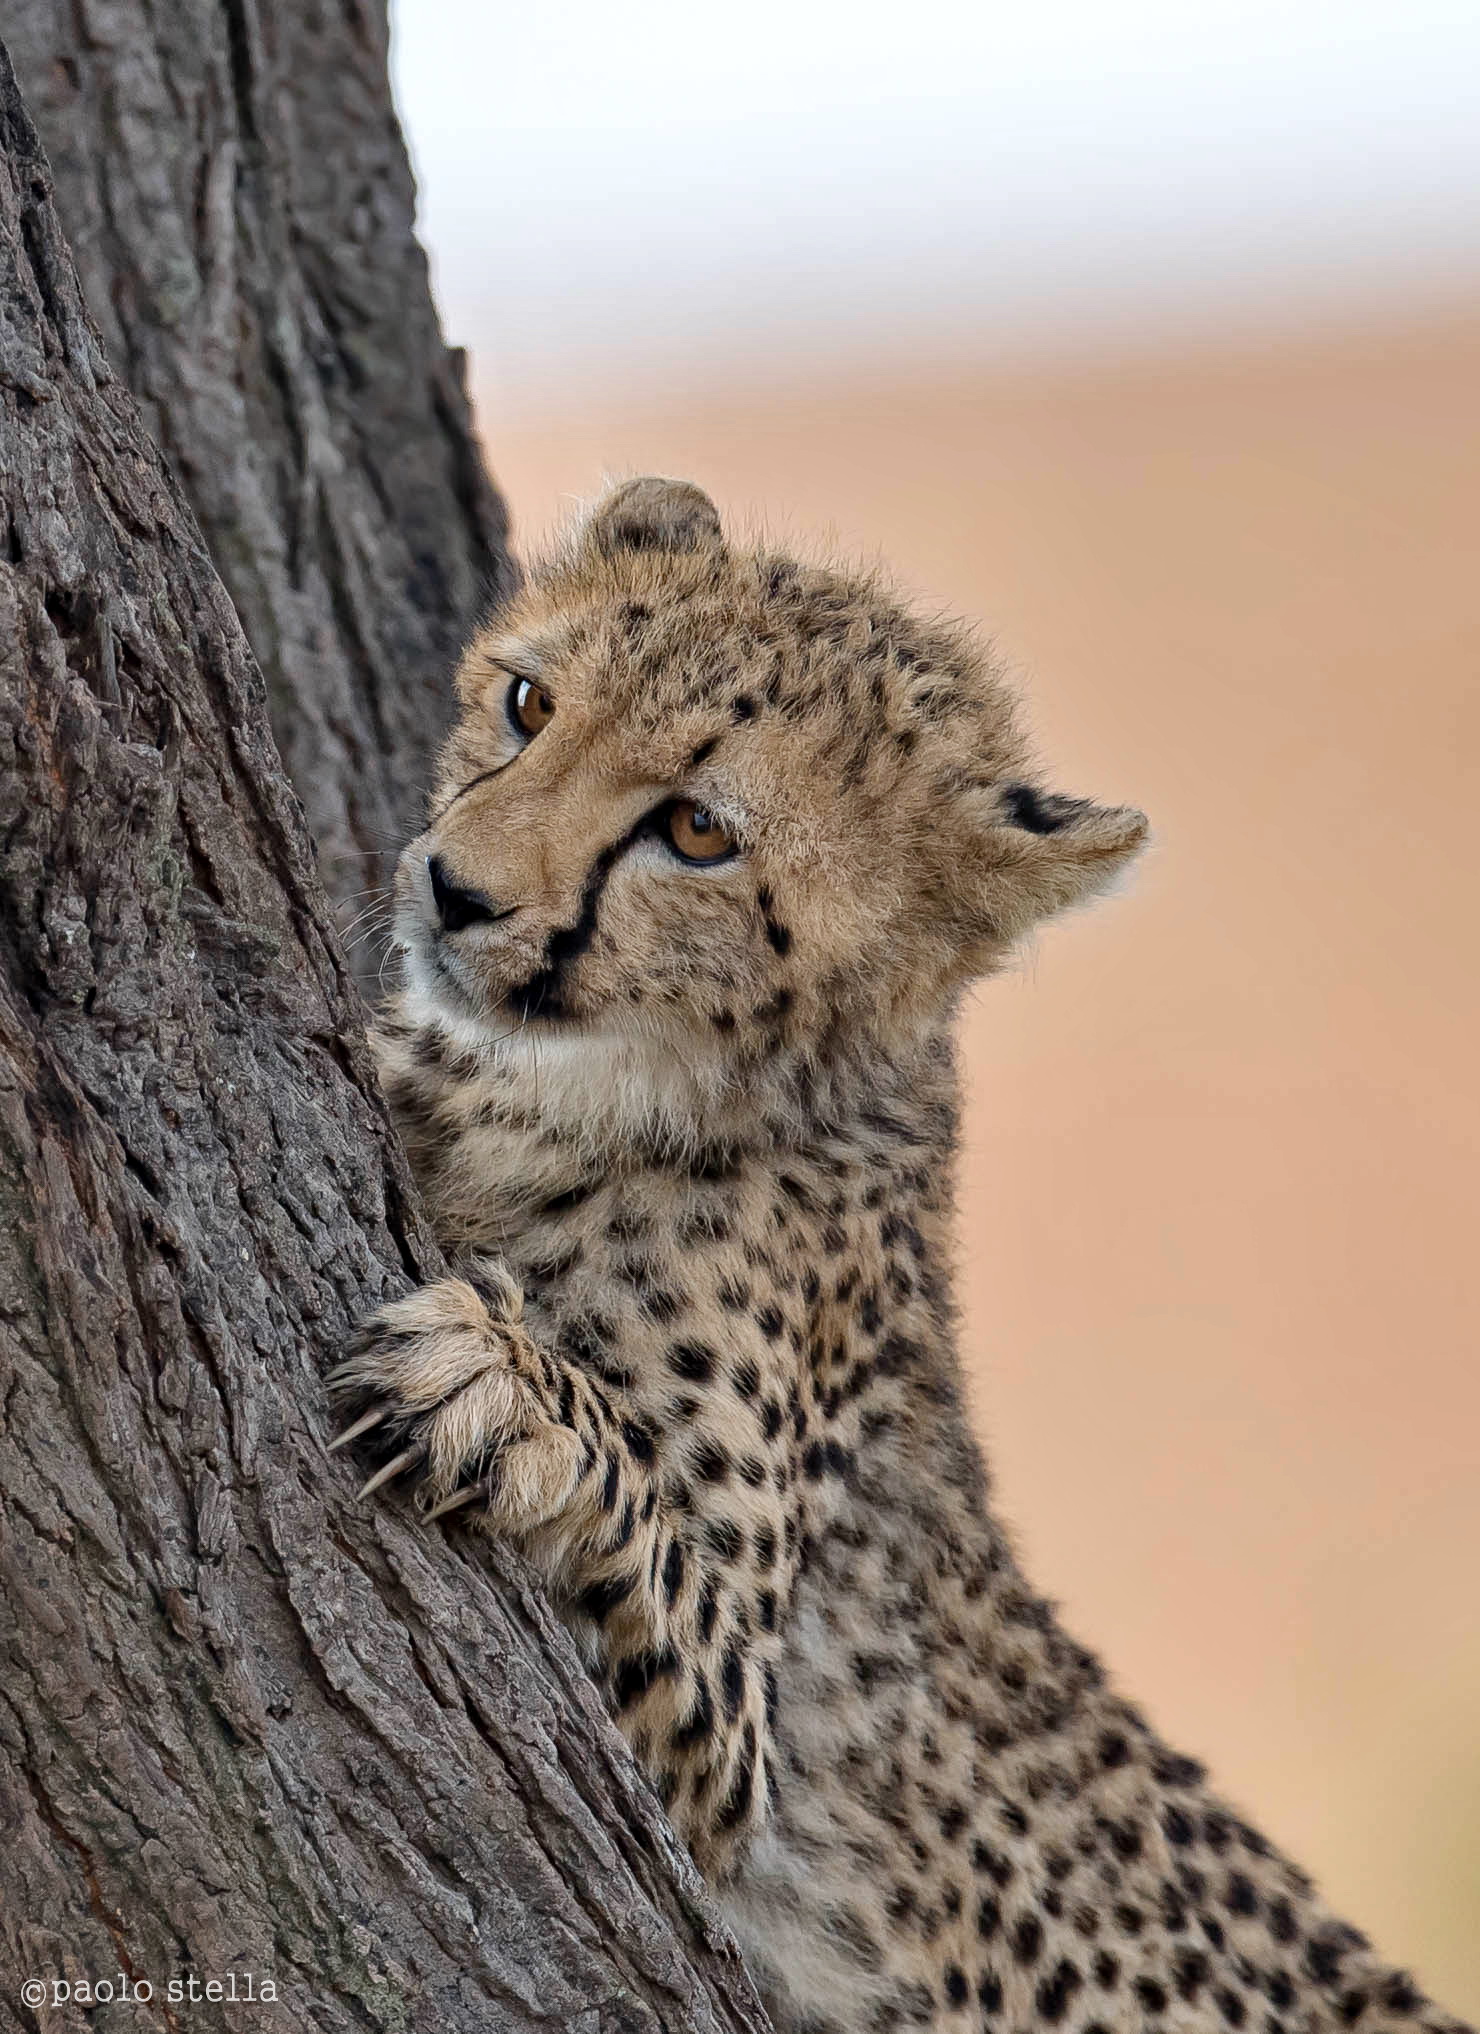 piccolo ghepardo sul tronco...